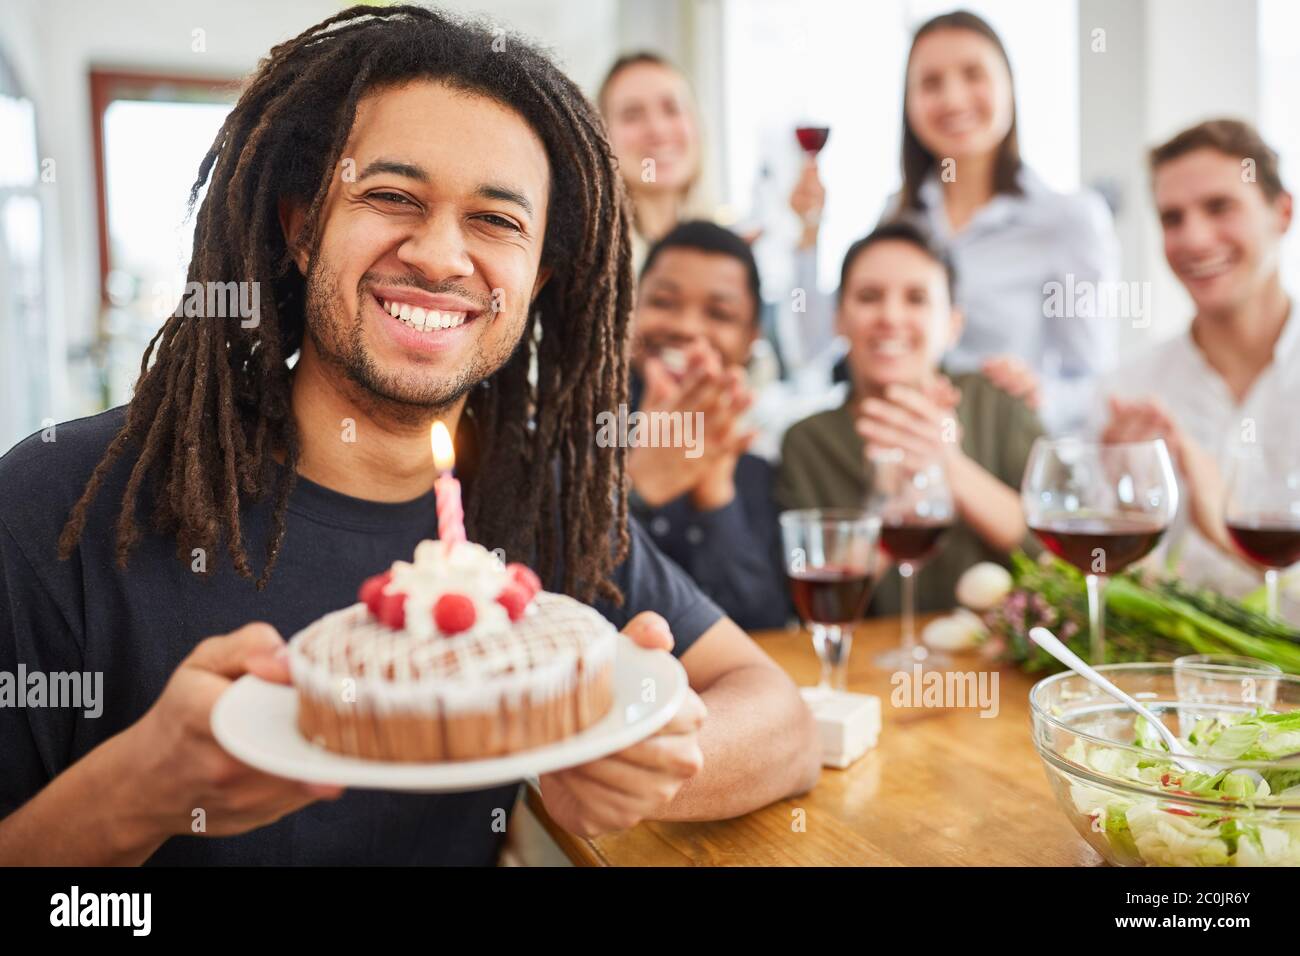 L'uomo con i Dreadlocks tiene la torta con la candela sul suo compleanno alla sua festa di compleanno Foto Stock